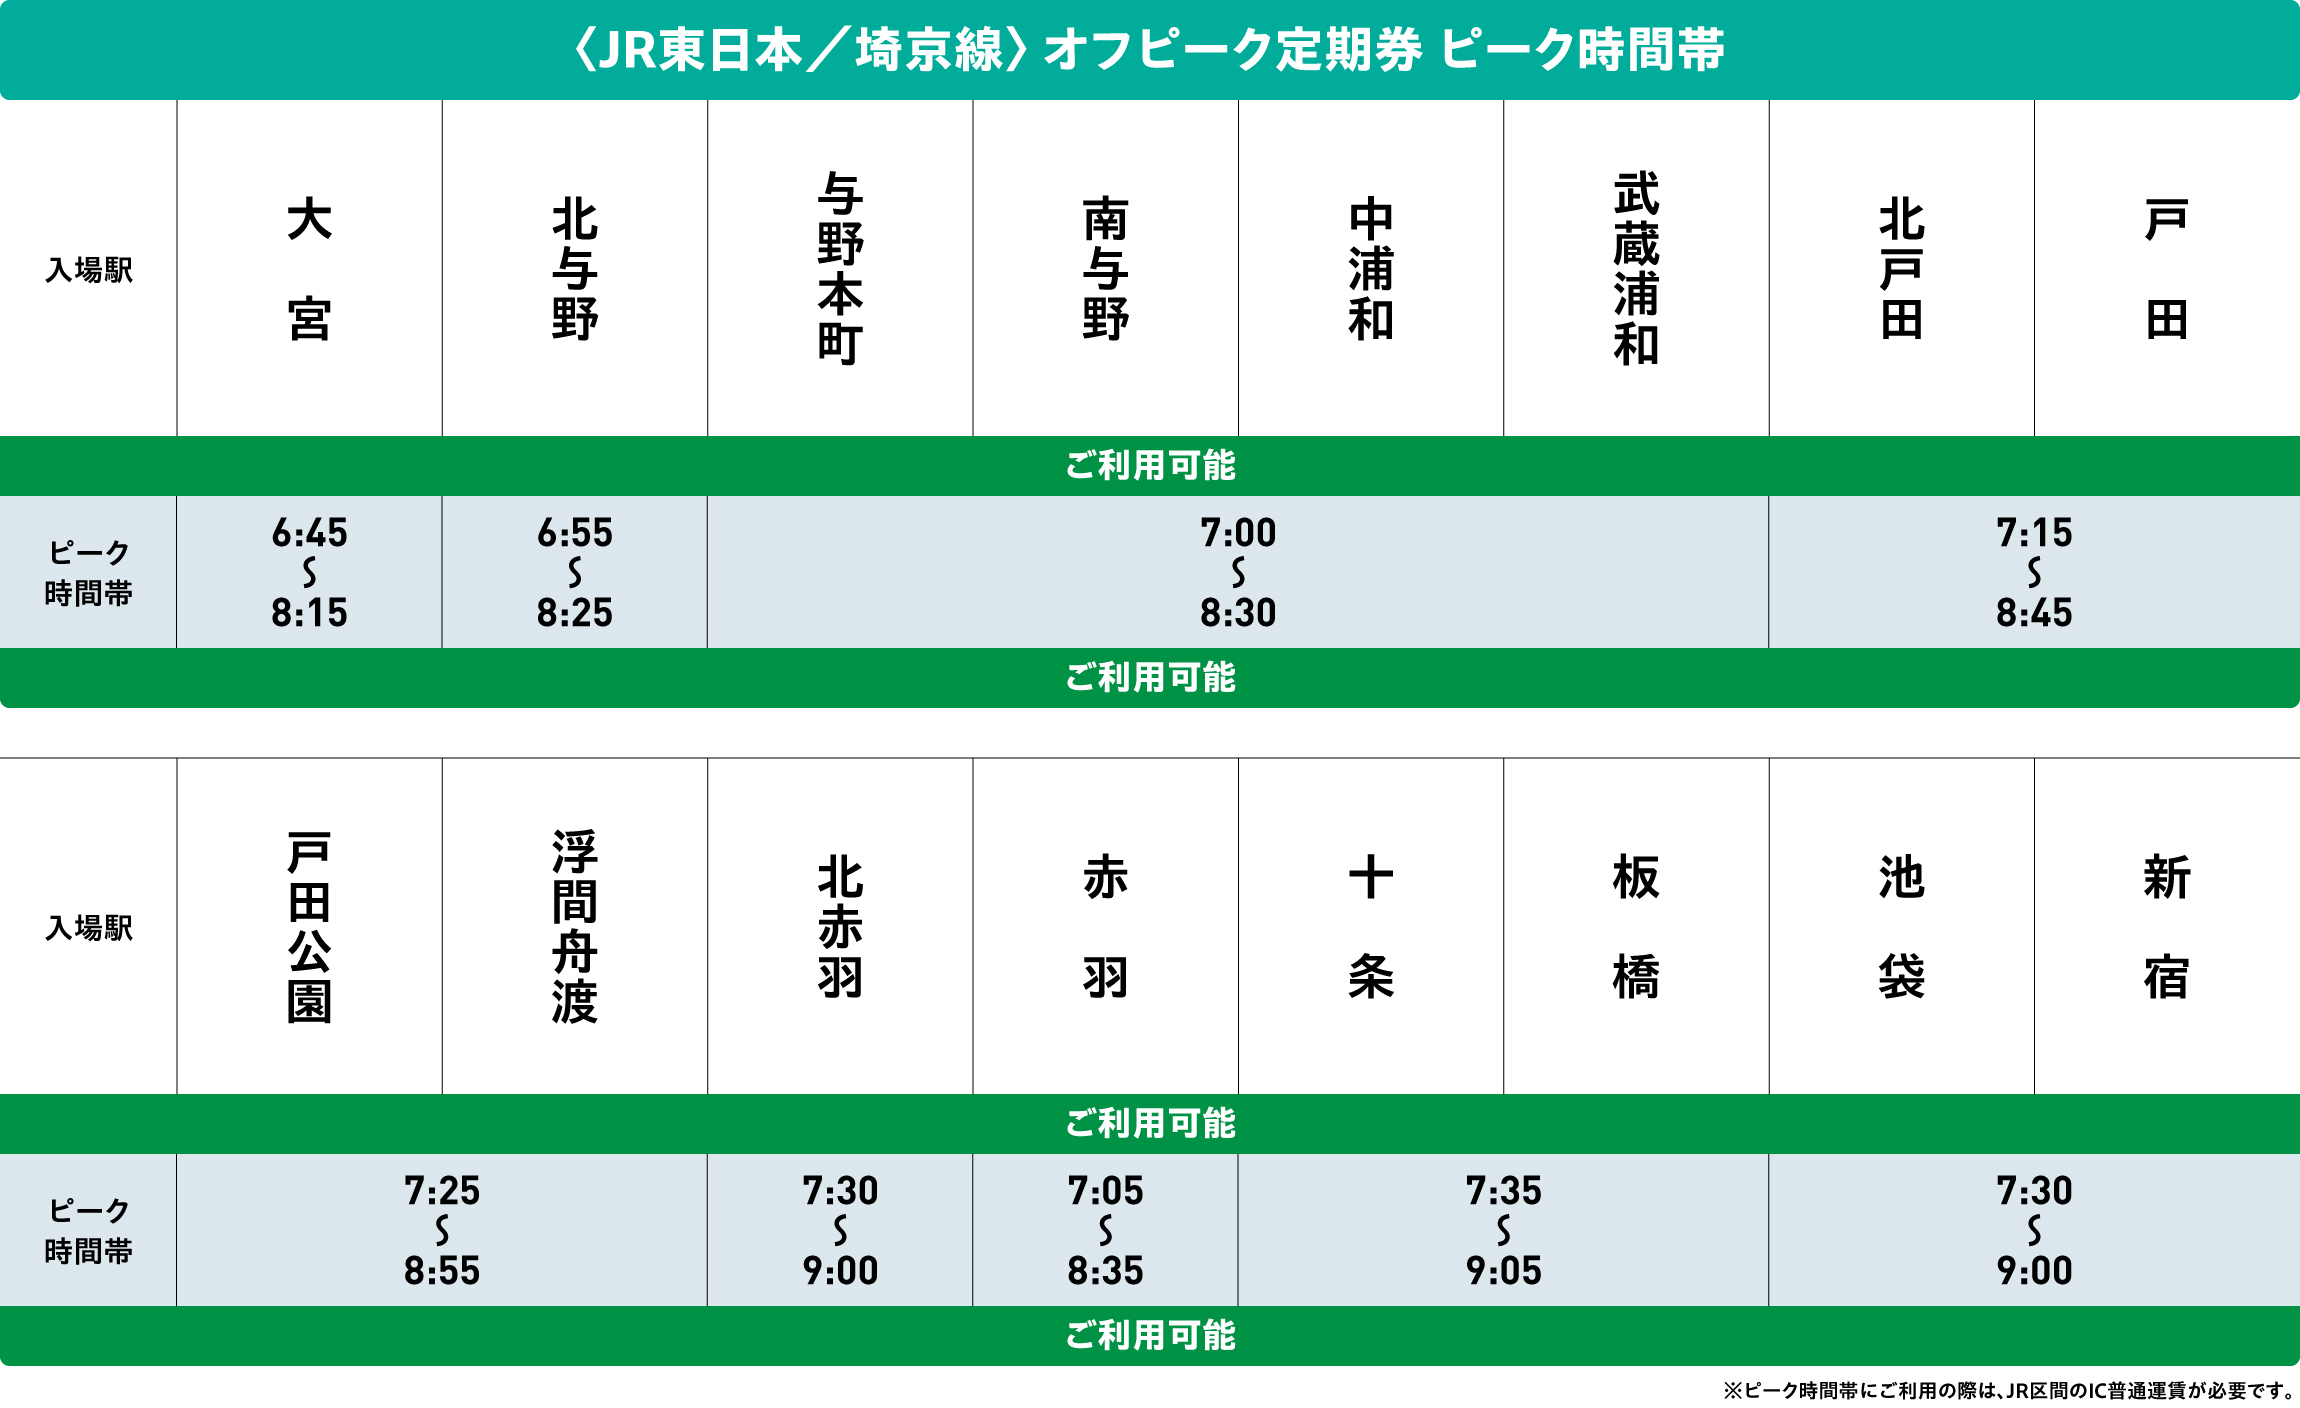 埼京線オフピークポイントサービス対象時間帯